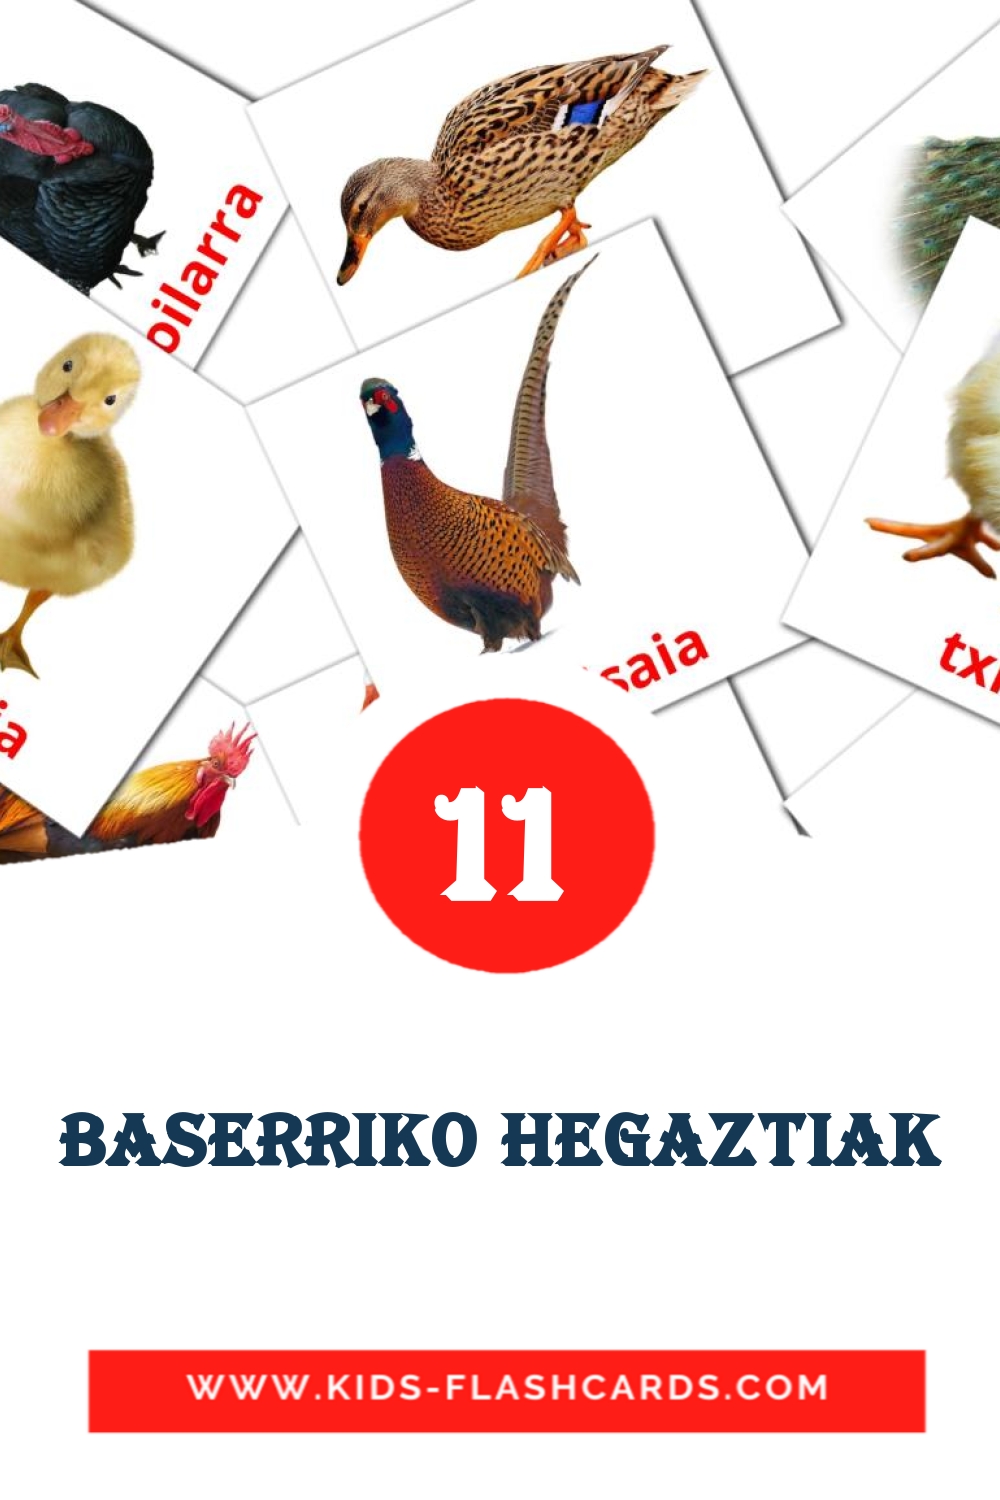 11 Baserriko hegaztiak fotokaarten voor kleuters in het baskisch